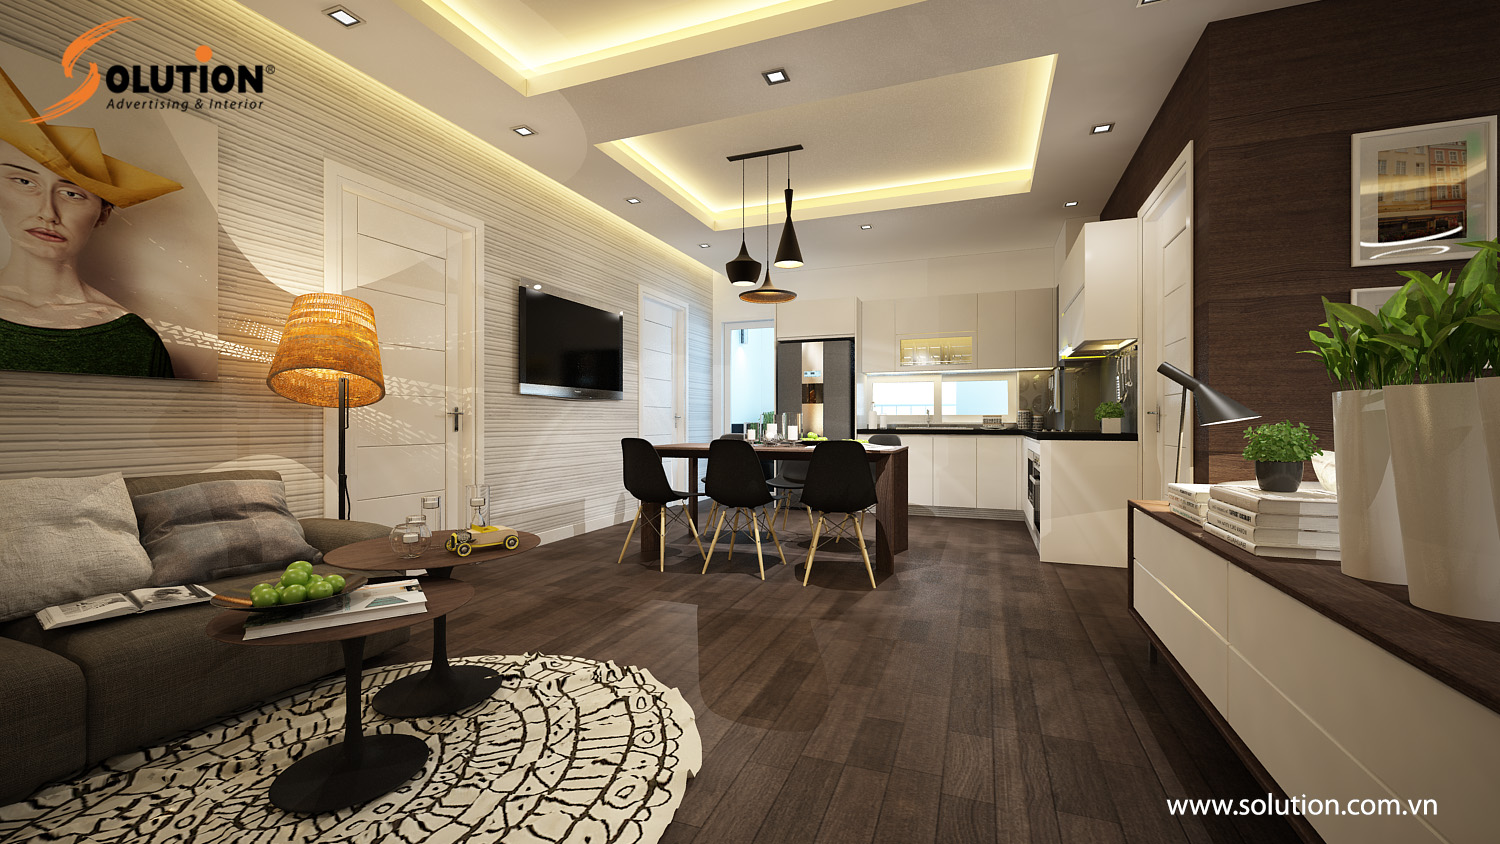 12+ Mẫu thiết kế nội thất chung cư 60m2 hiện đại, tối ưu không gian